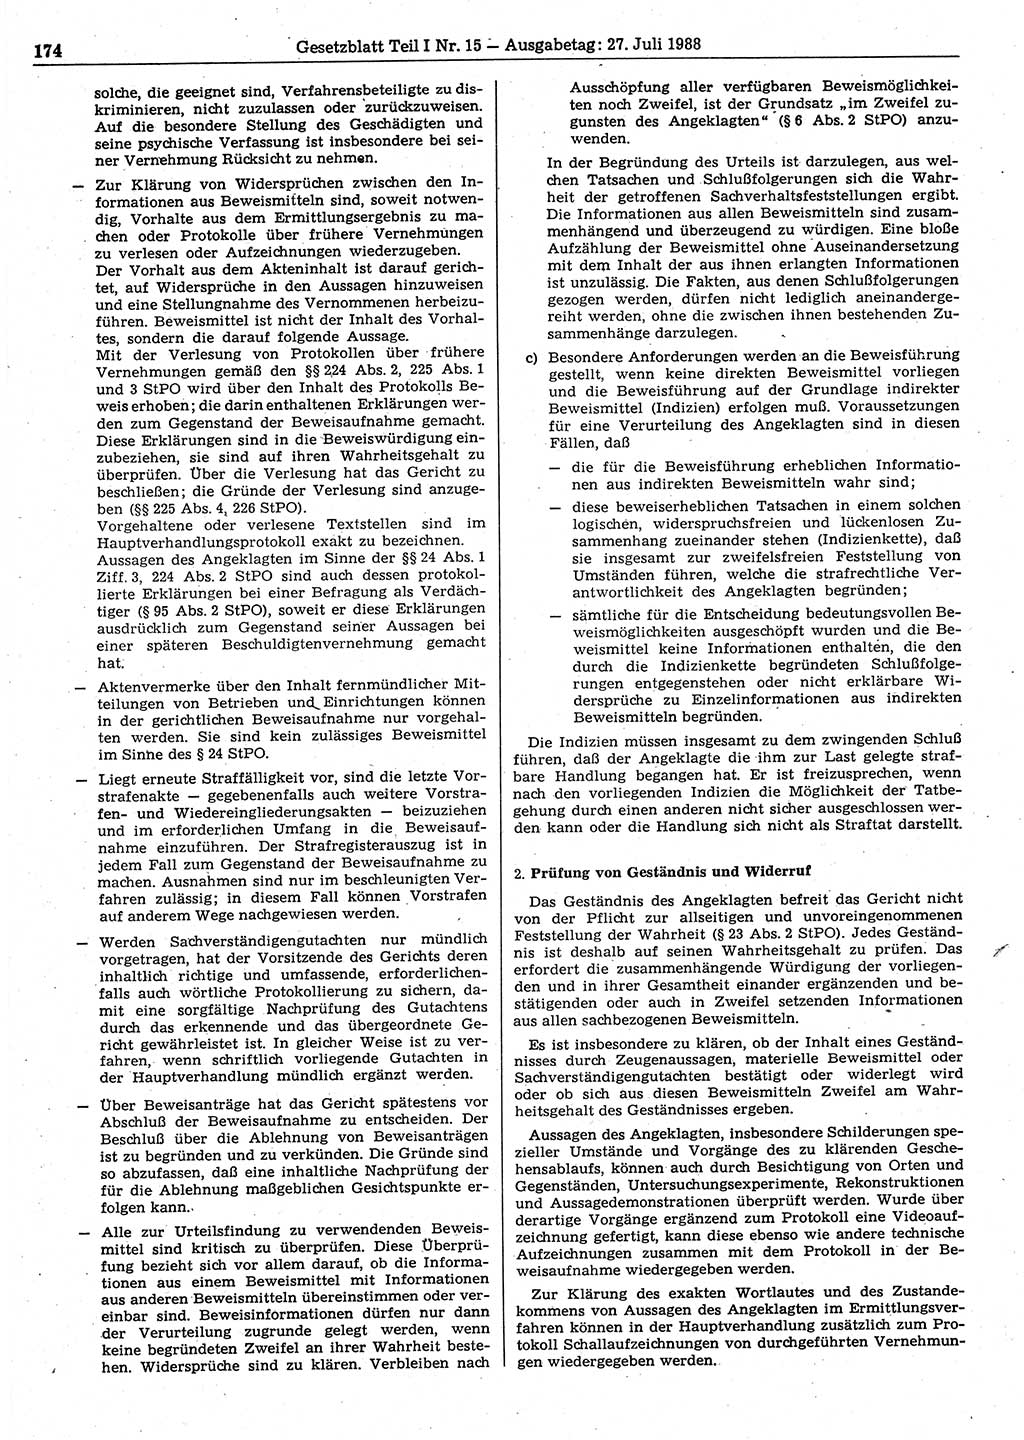 Gesetzblatt (GBl.) der Deutschen Demokratischen Republik (DDR) Teil Ⅰ 1988, Seite 174 (GBl. DDR Ⅰ 1988, S. 174)